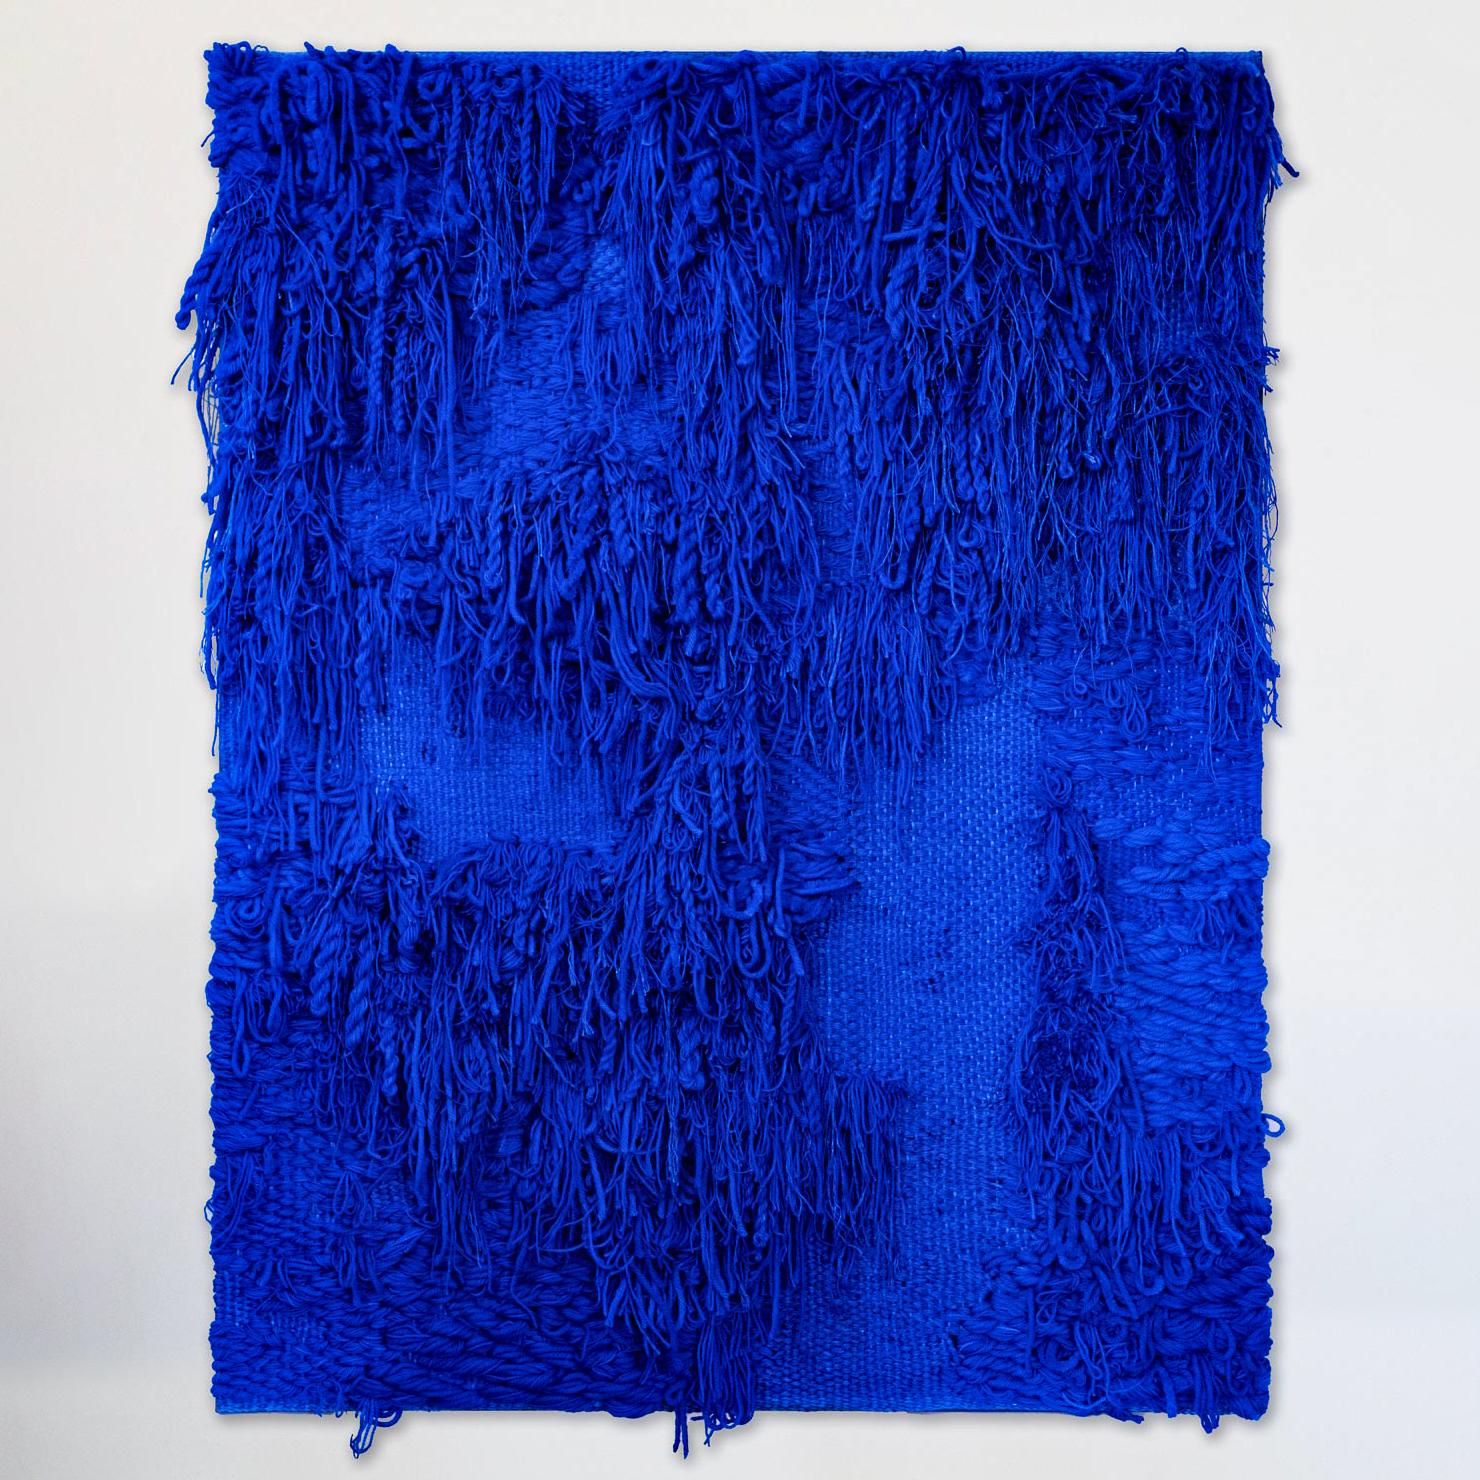 Titel: BLUE II, Katja Beckman (geb. 1990, Schweden)

Dieser handgewebte Wandteppich ist komplex, taktil und reich an Farben. Die Komposition wird mit verschiedenen Techniken und MATERIALEN wie gefärbtem Leinen, Wolle und Kunsthaar hergestellt. 

Der